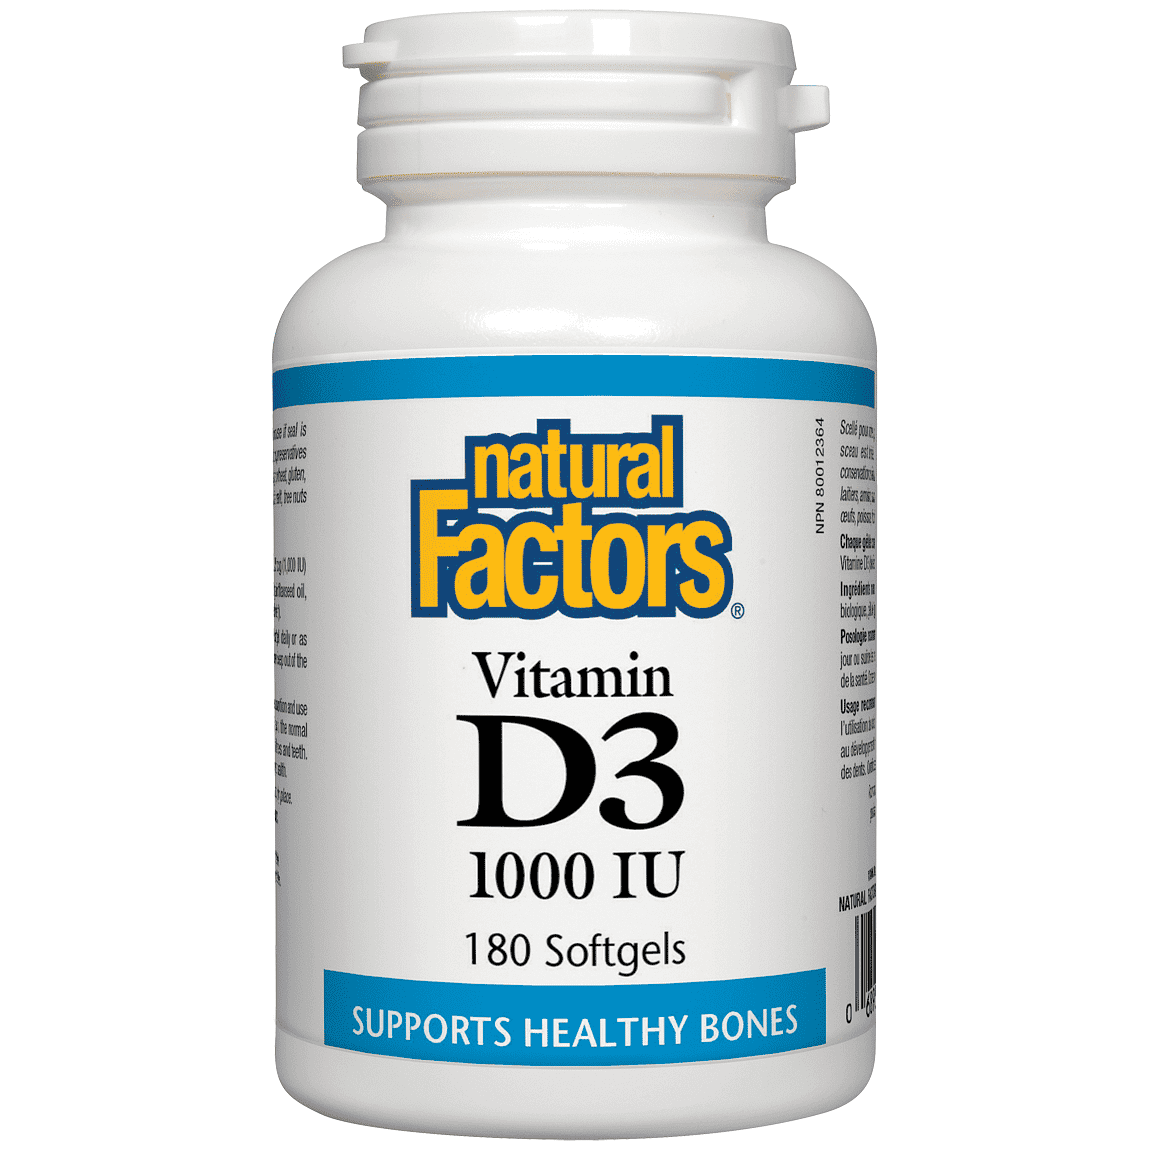 Natural Factors Vitamin D3 1000 IU, 180 Softgels